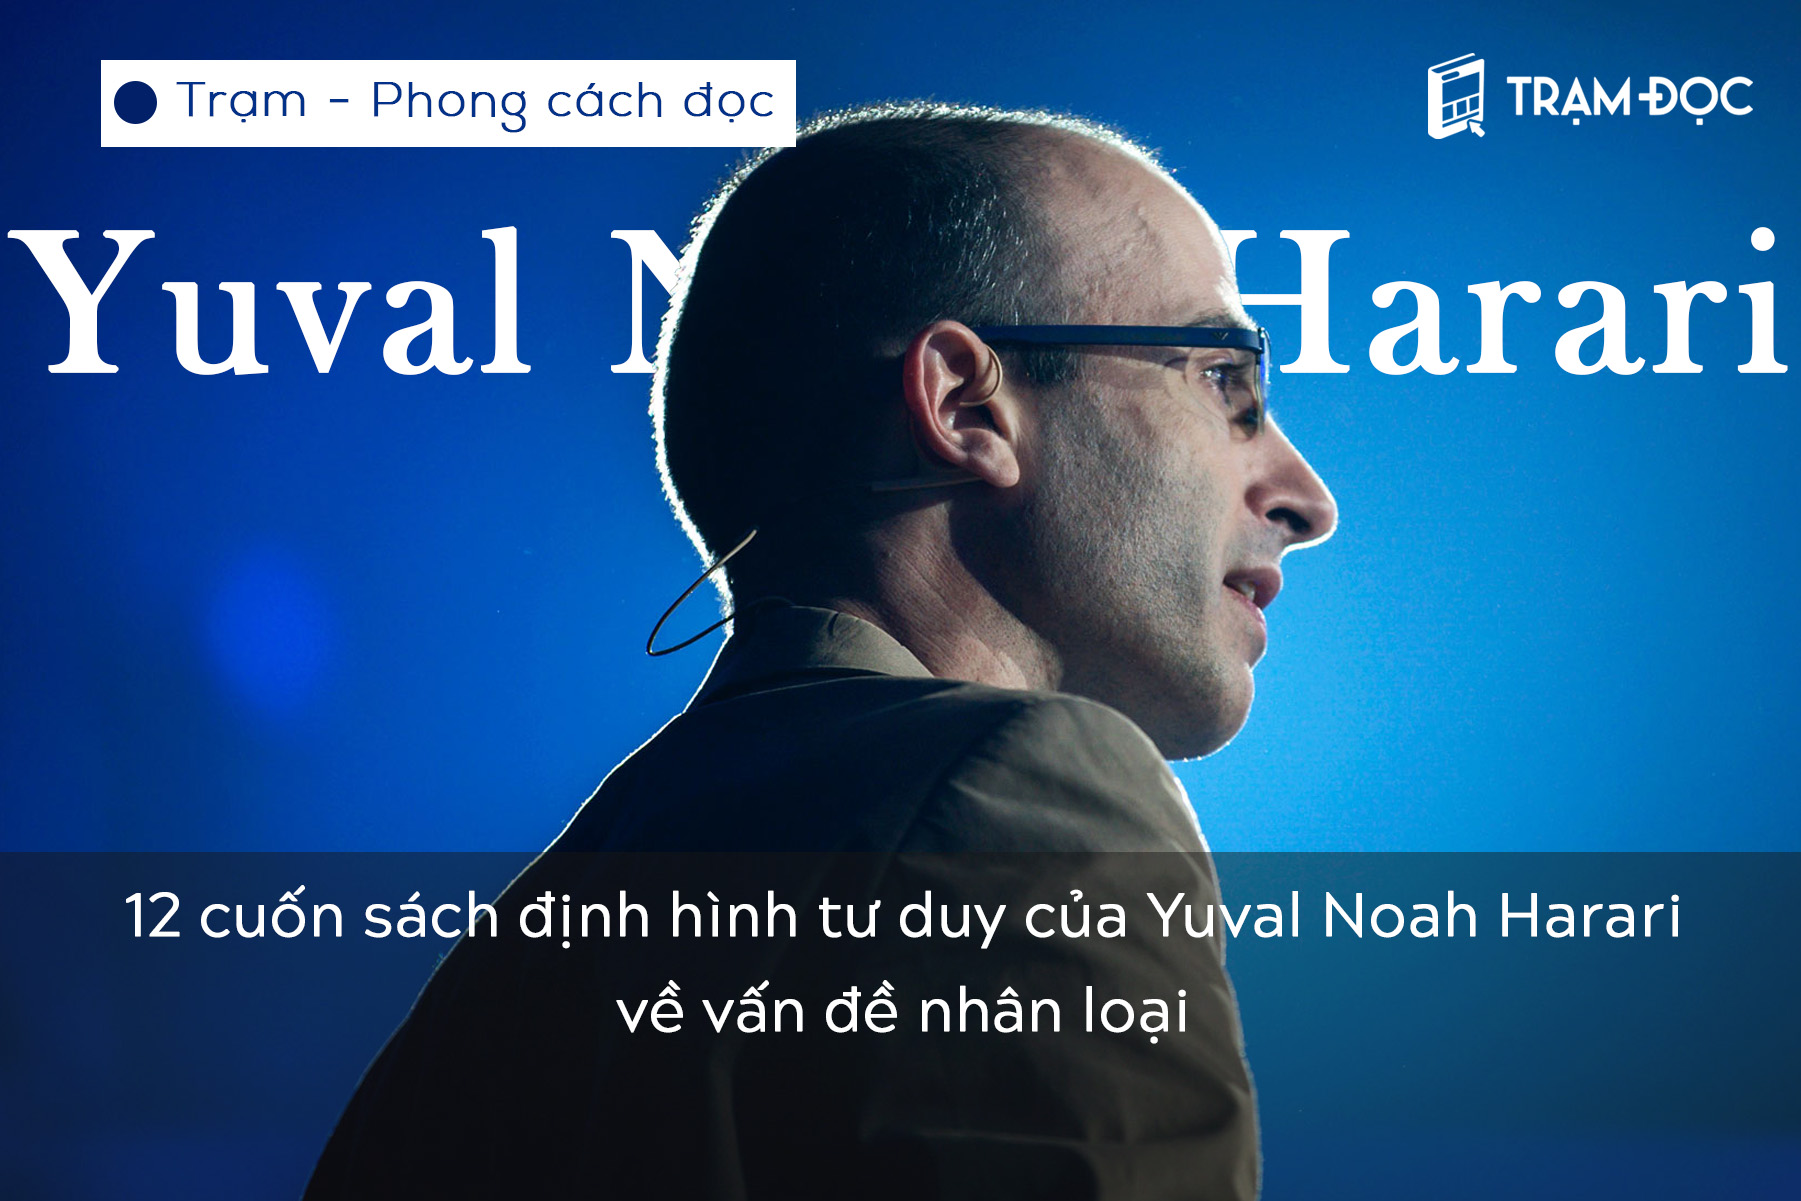 12 cuốn sách định hình tư duy của Yuval Noah Harari về vấn đề nhân loại